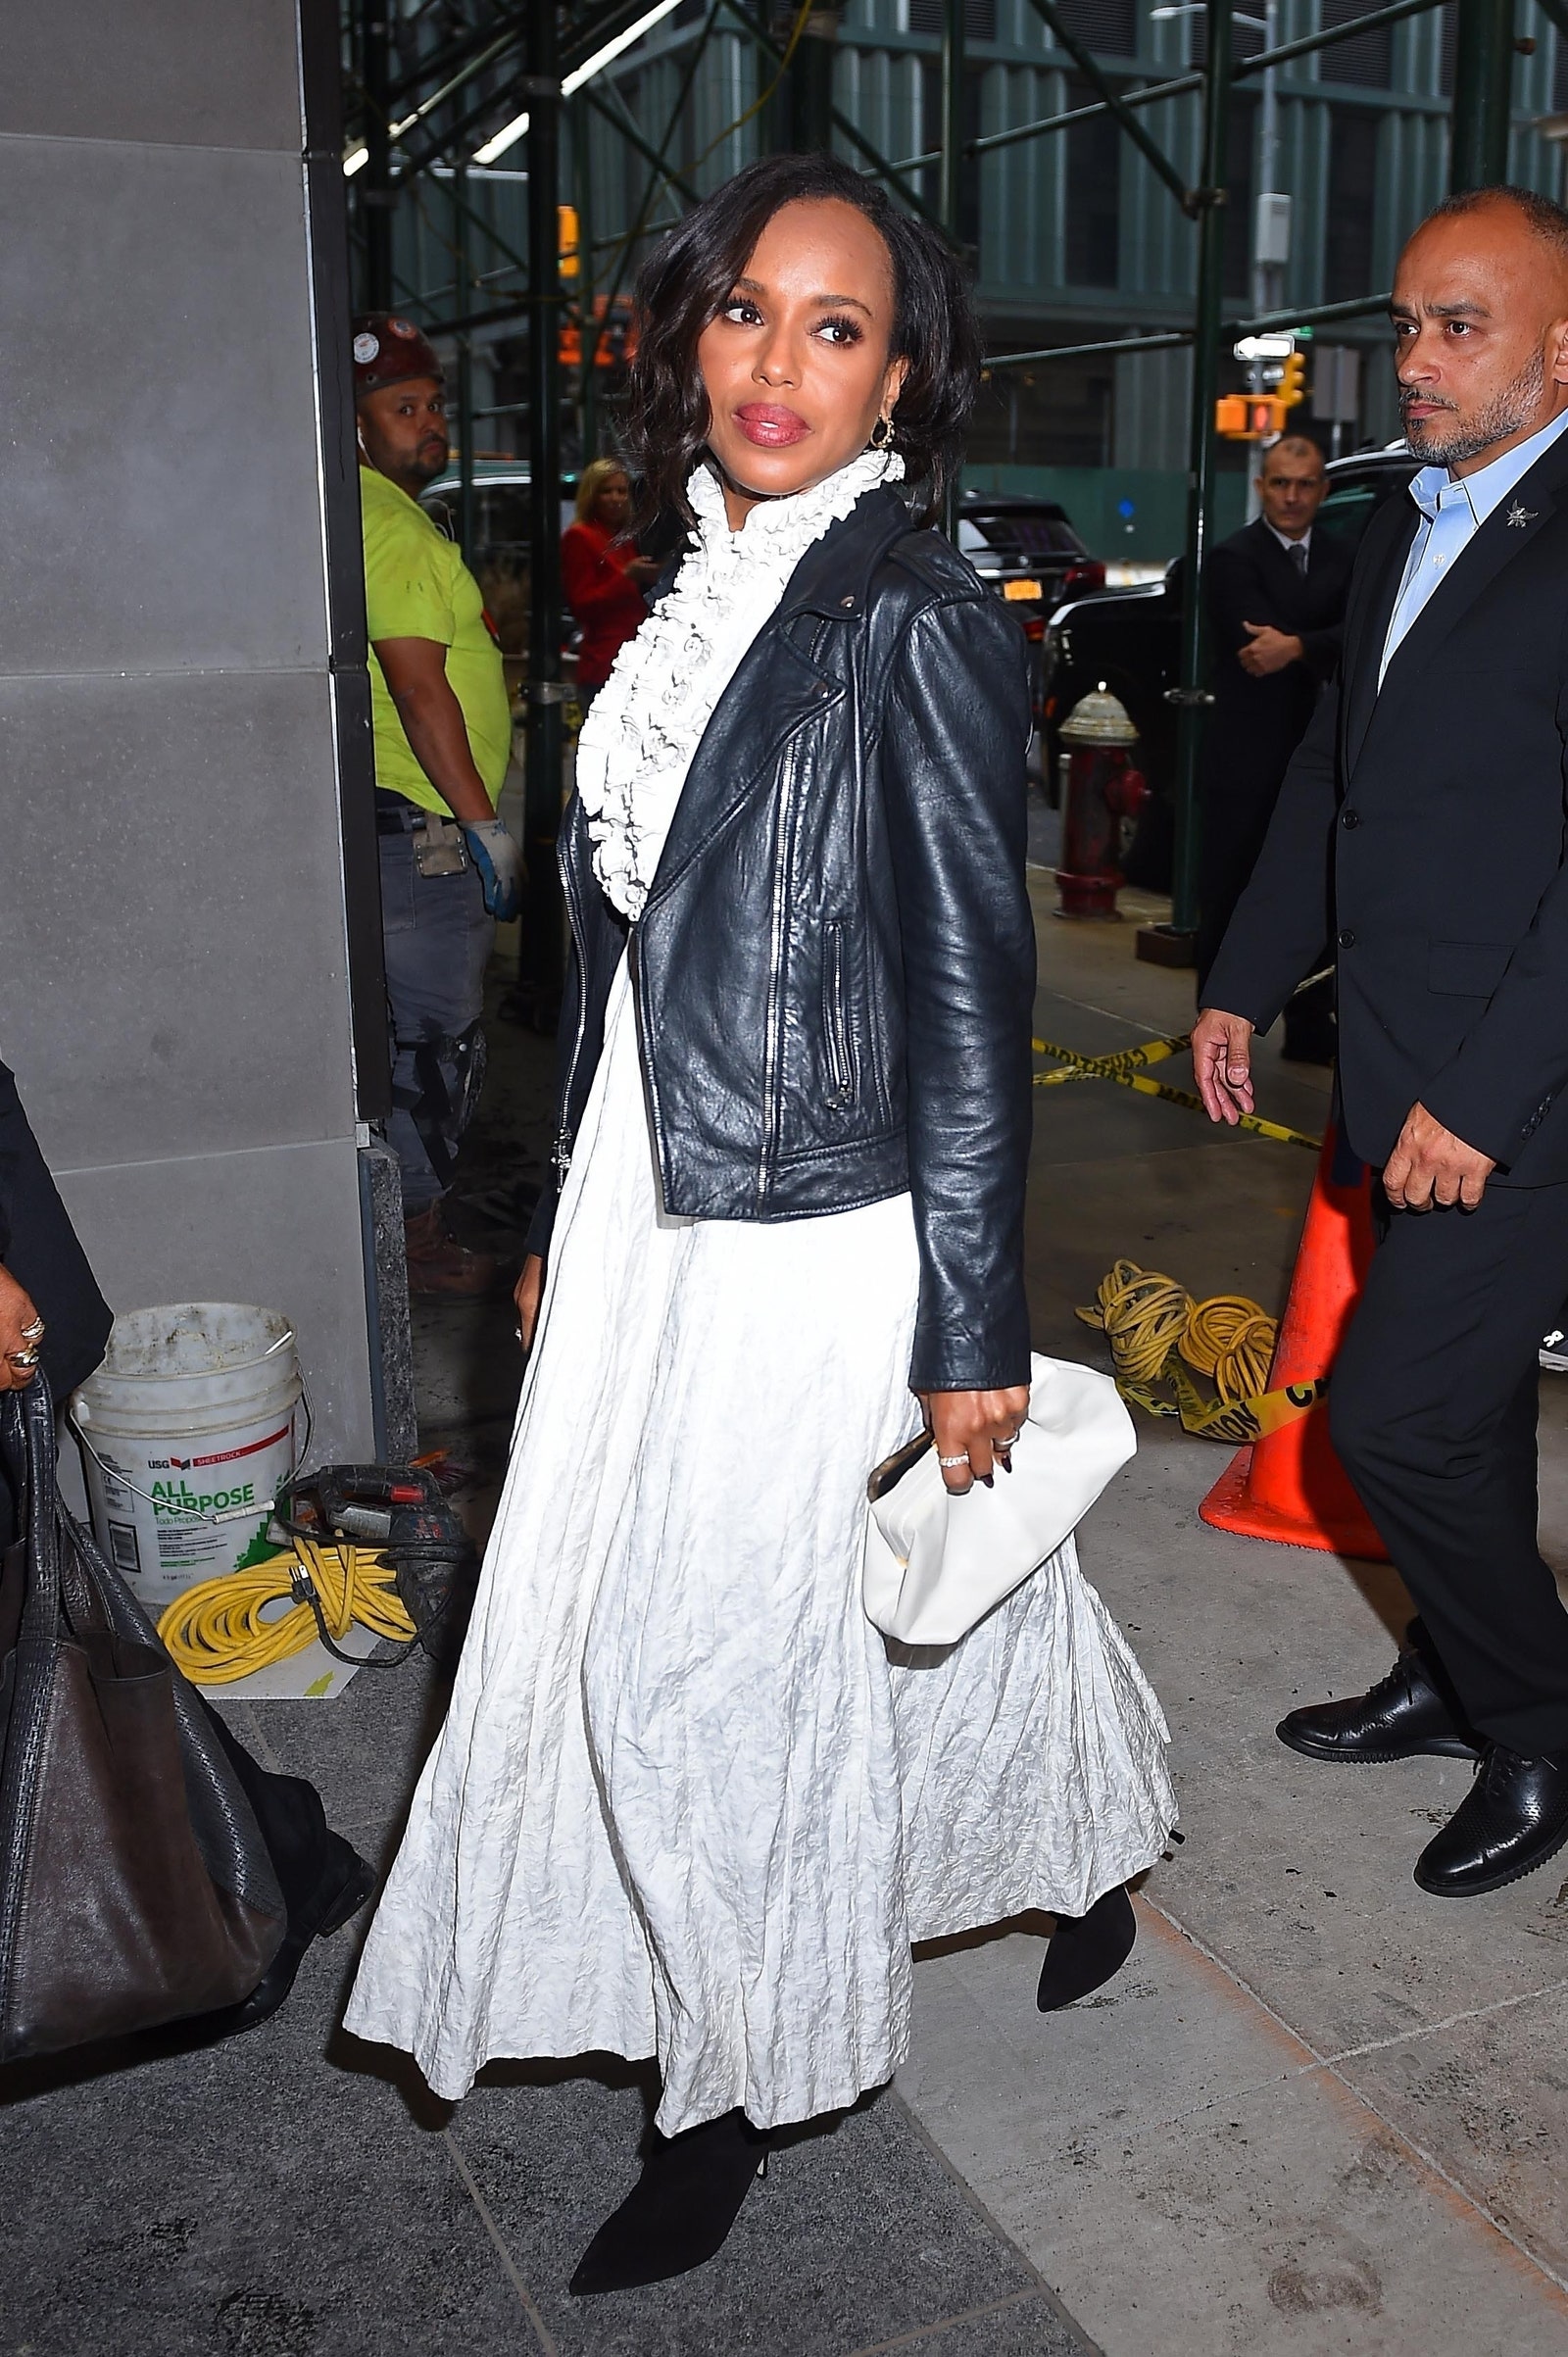 نيويورك نيويورك الممثلة كيري واشنطن تتوقف لمشاهدة ما يحدث على الهواء مباشرة مرتدية فستانًا أبيض مع سترة جلدية سوداء...